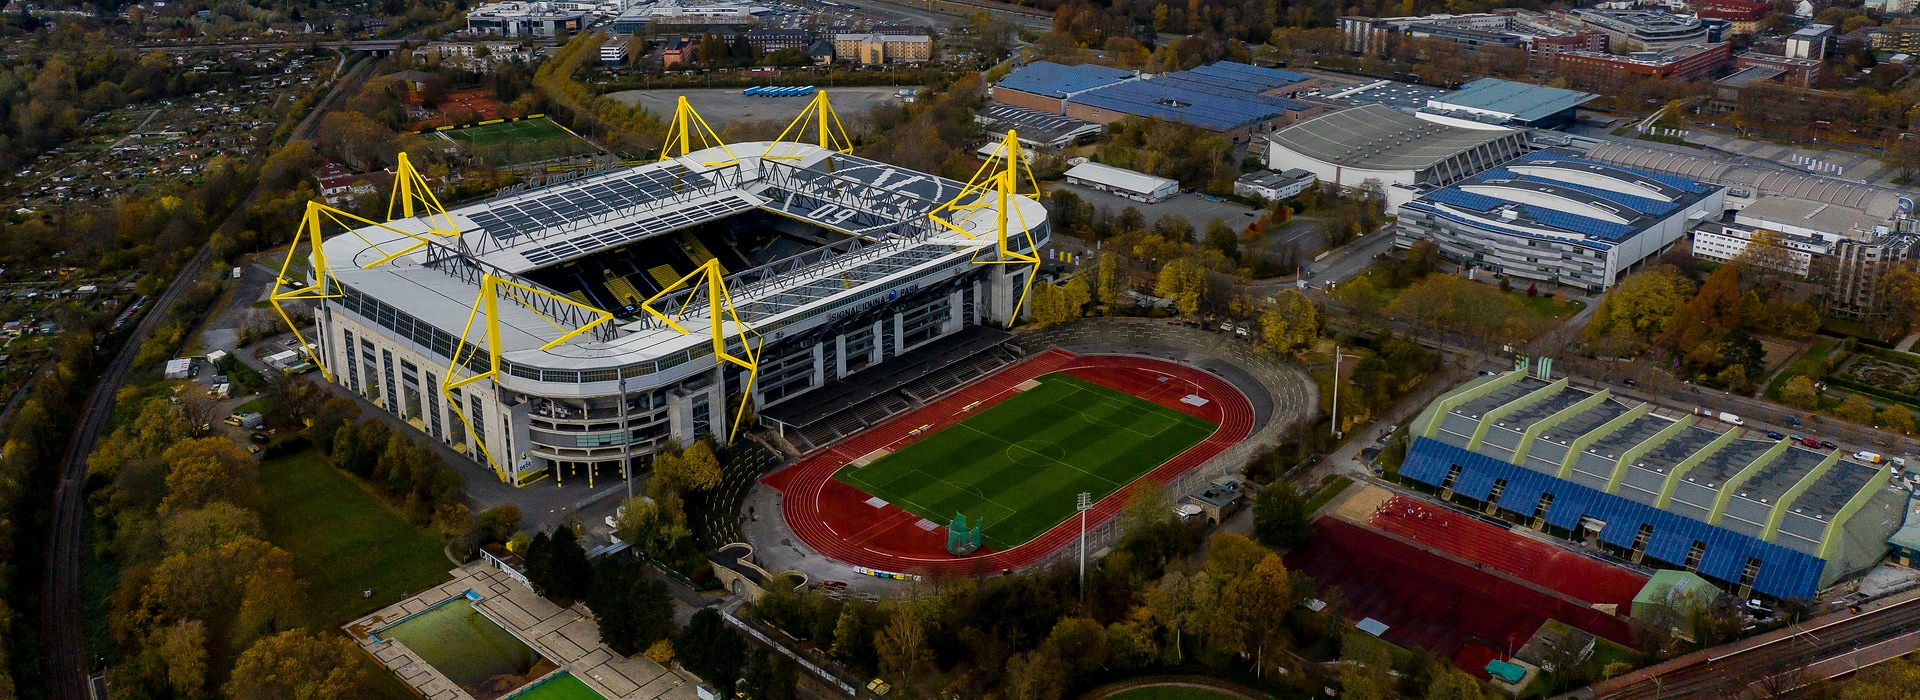 Dienstag 10.11.2020, 1. Bundesliga Saison 20/21 - in Dortmund, .Borussia Dortmund .Stadion, ...Copyright:.Borussia Dortmund GmbH & Co. KGaA.Rheinlanddamm 207-209.44137 Dortmund....Dienstag 10.11.2020, 1. Bundesliga Saison 20/21 - in Dortmund, .Borussia Dortmund .Stadion, ...Copyright:.Borussia Dortmund GmbH & Co. KGaA.Rheinlanddamm 207-209.44137 Dortmund....